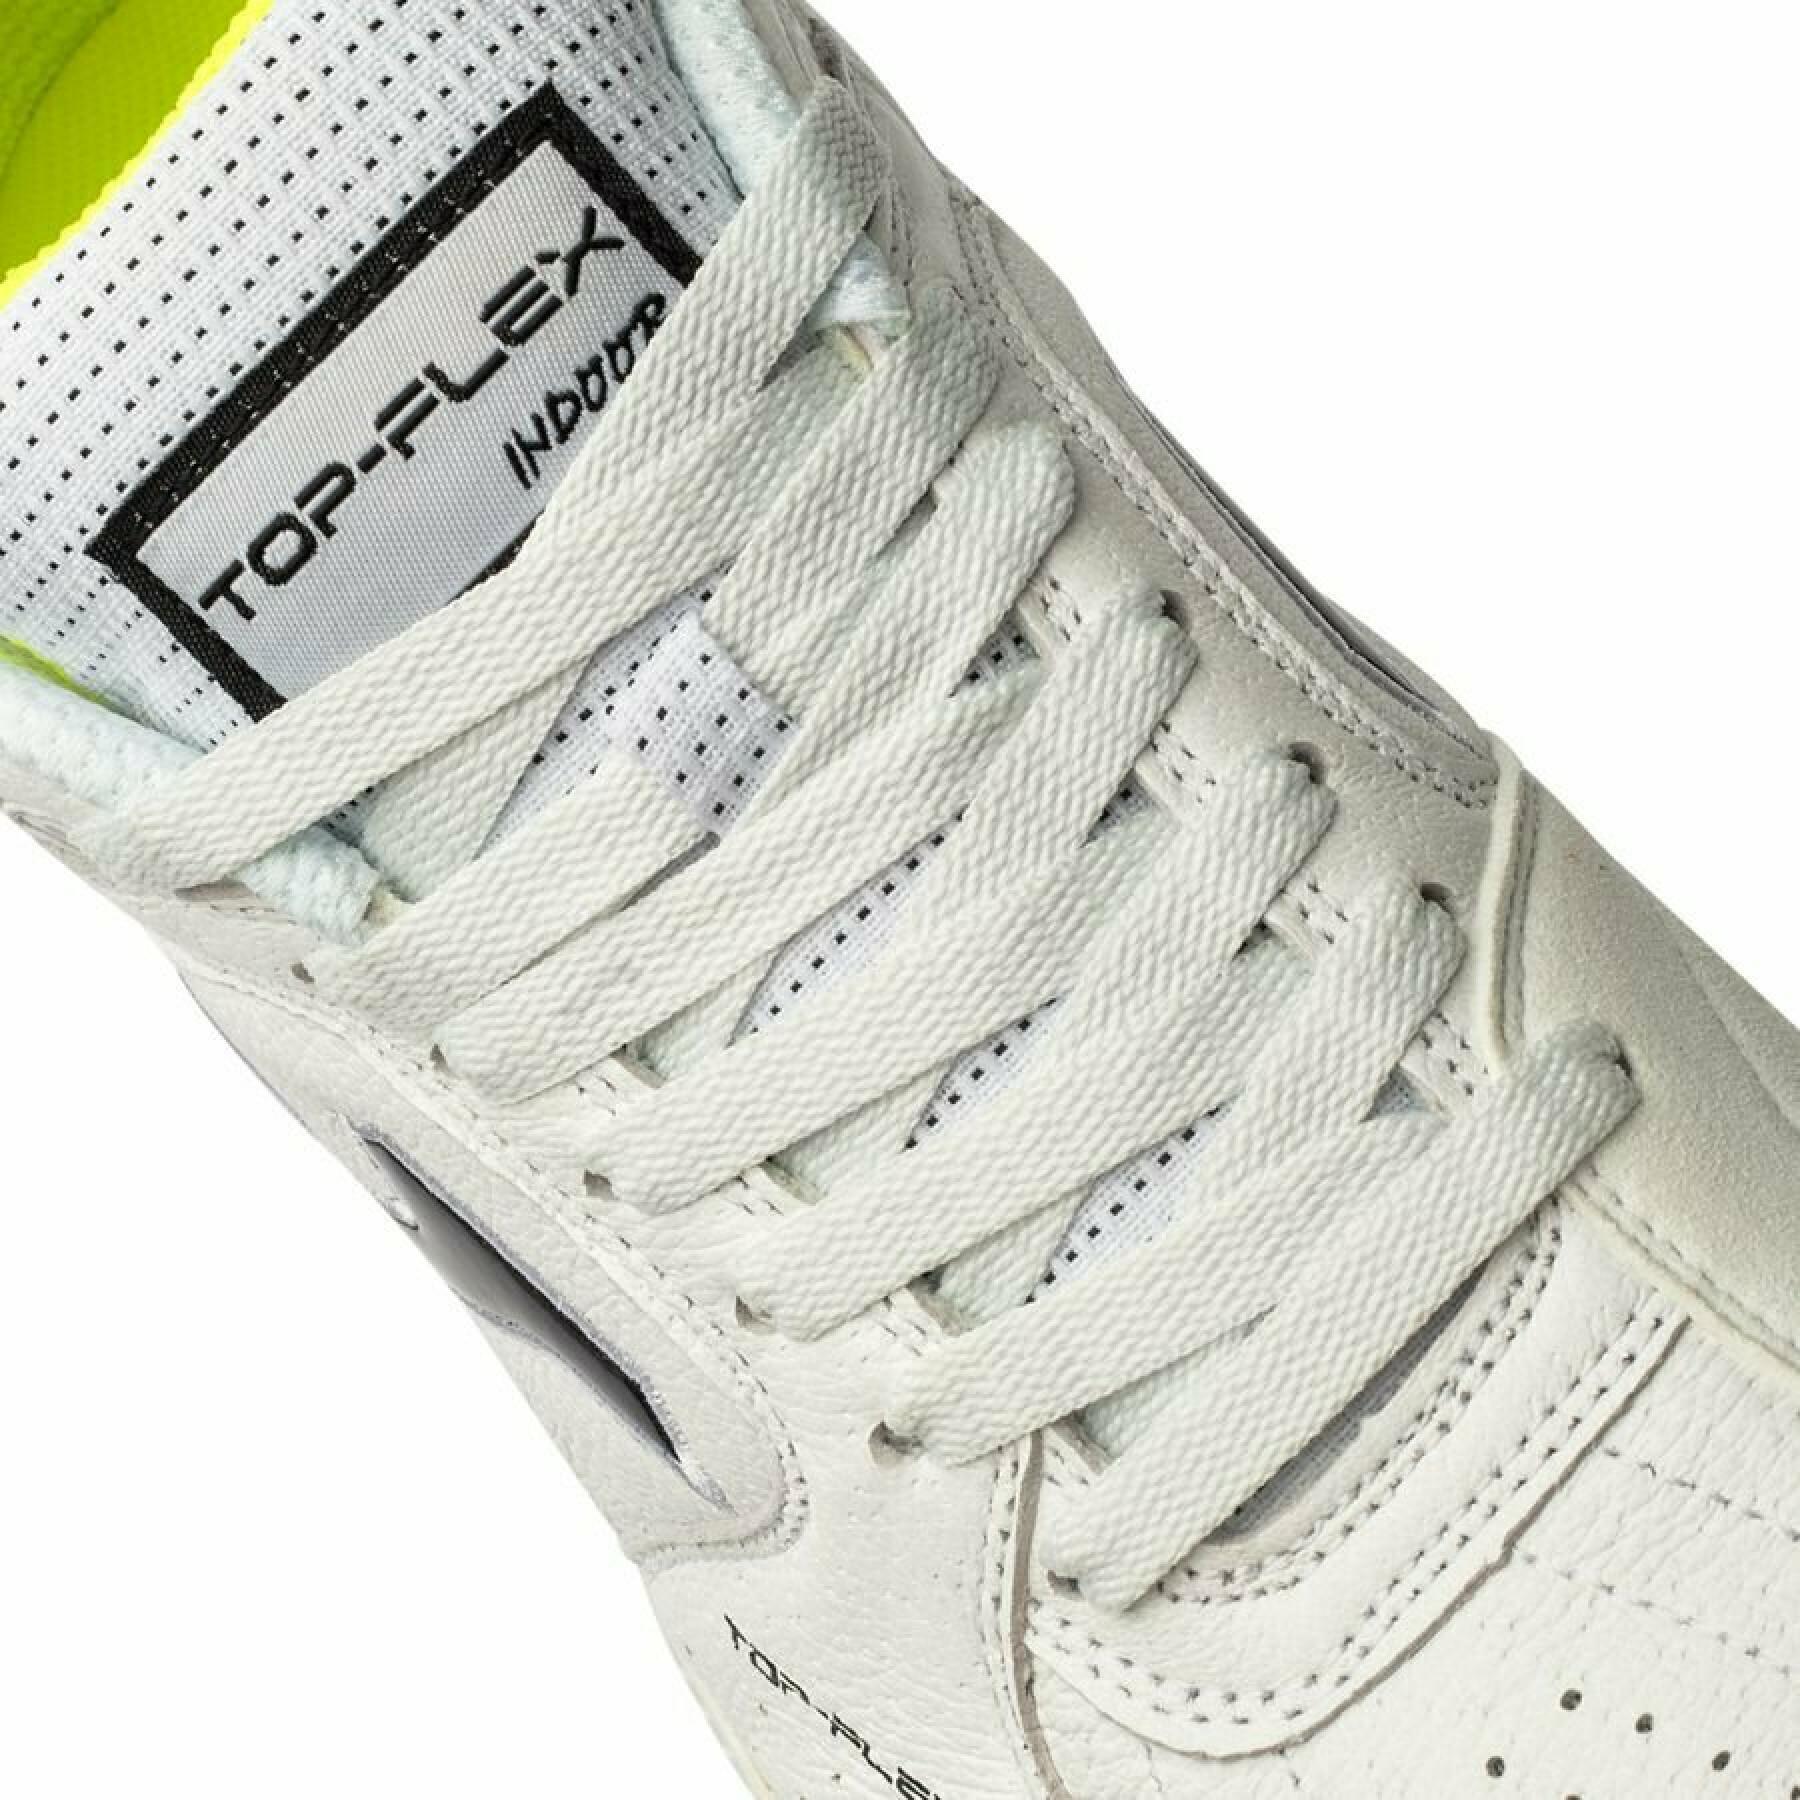 Sapatos de Futsal Joma Top Flex